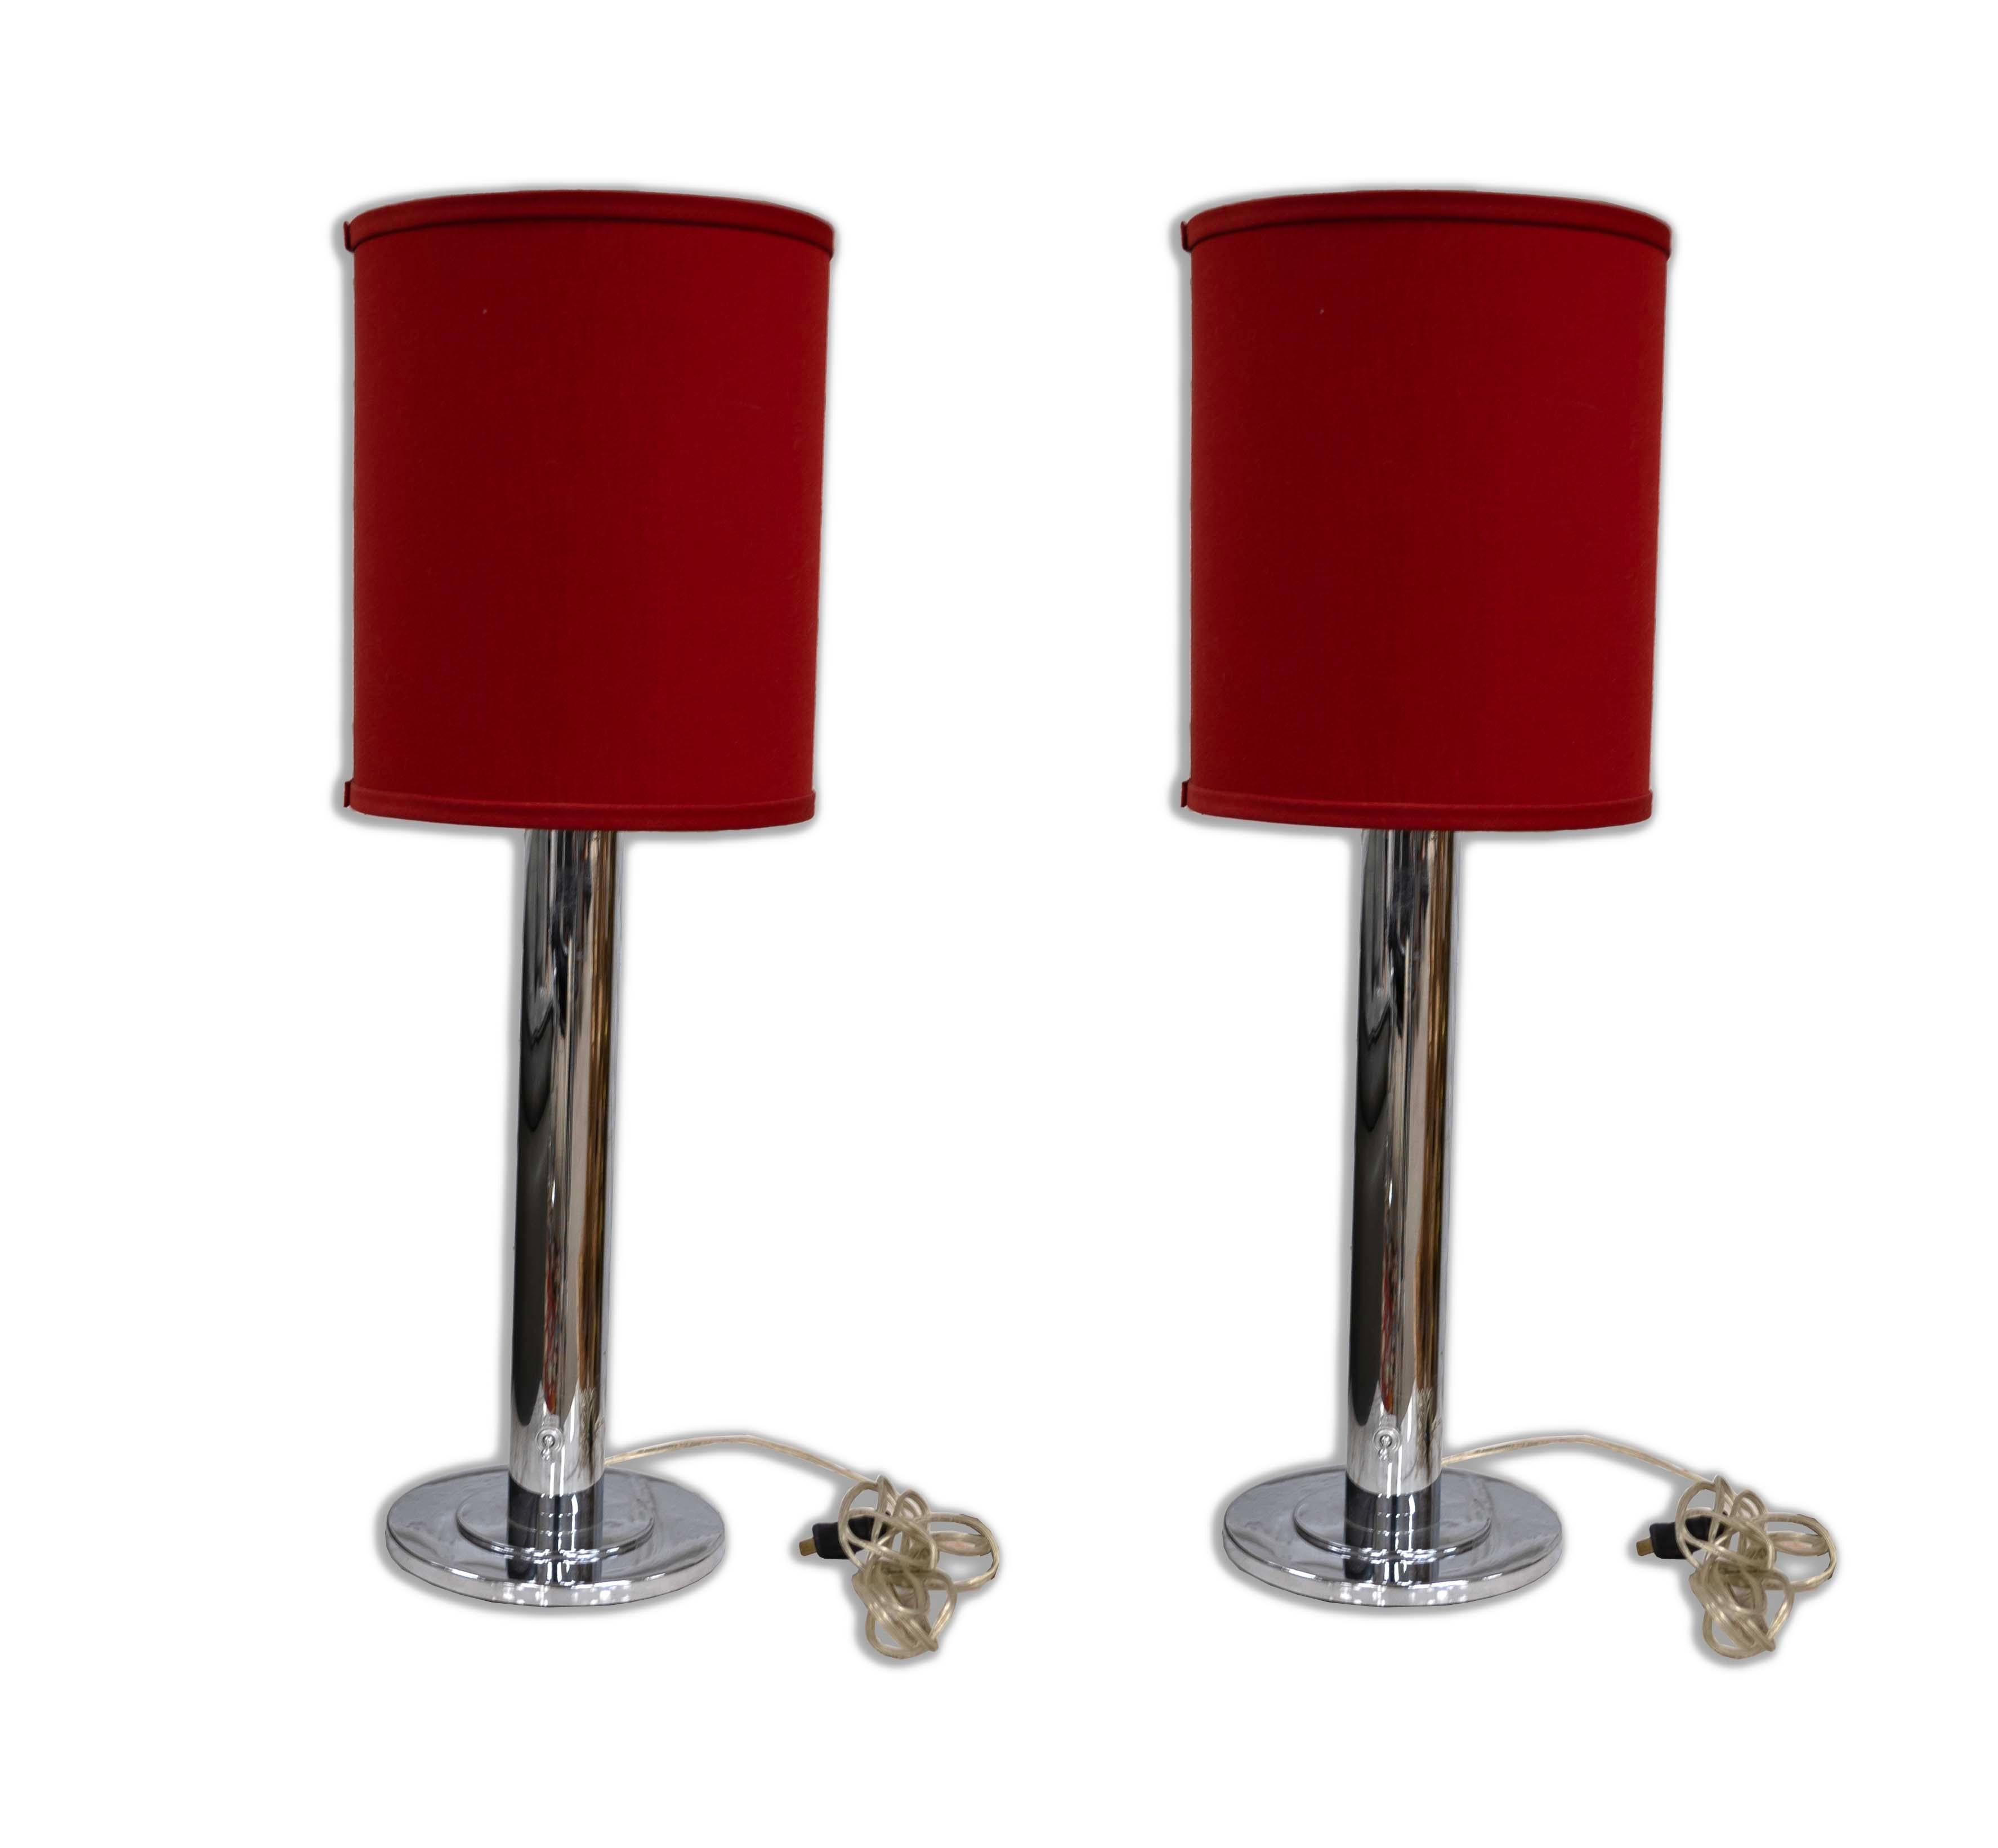 Dieses Paar verchromter NESSEN LIGHTING Tischlampen mit roten Schirmen ist schick und lebendig und belebt jedes moderne Interieur. Mit ihren schlanken, verchromten Stielen, die auf prächtige rote Schirme treffen, sind diese Lampen eine auffallende